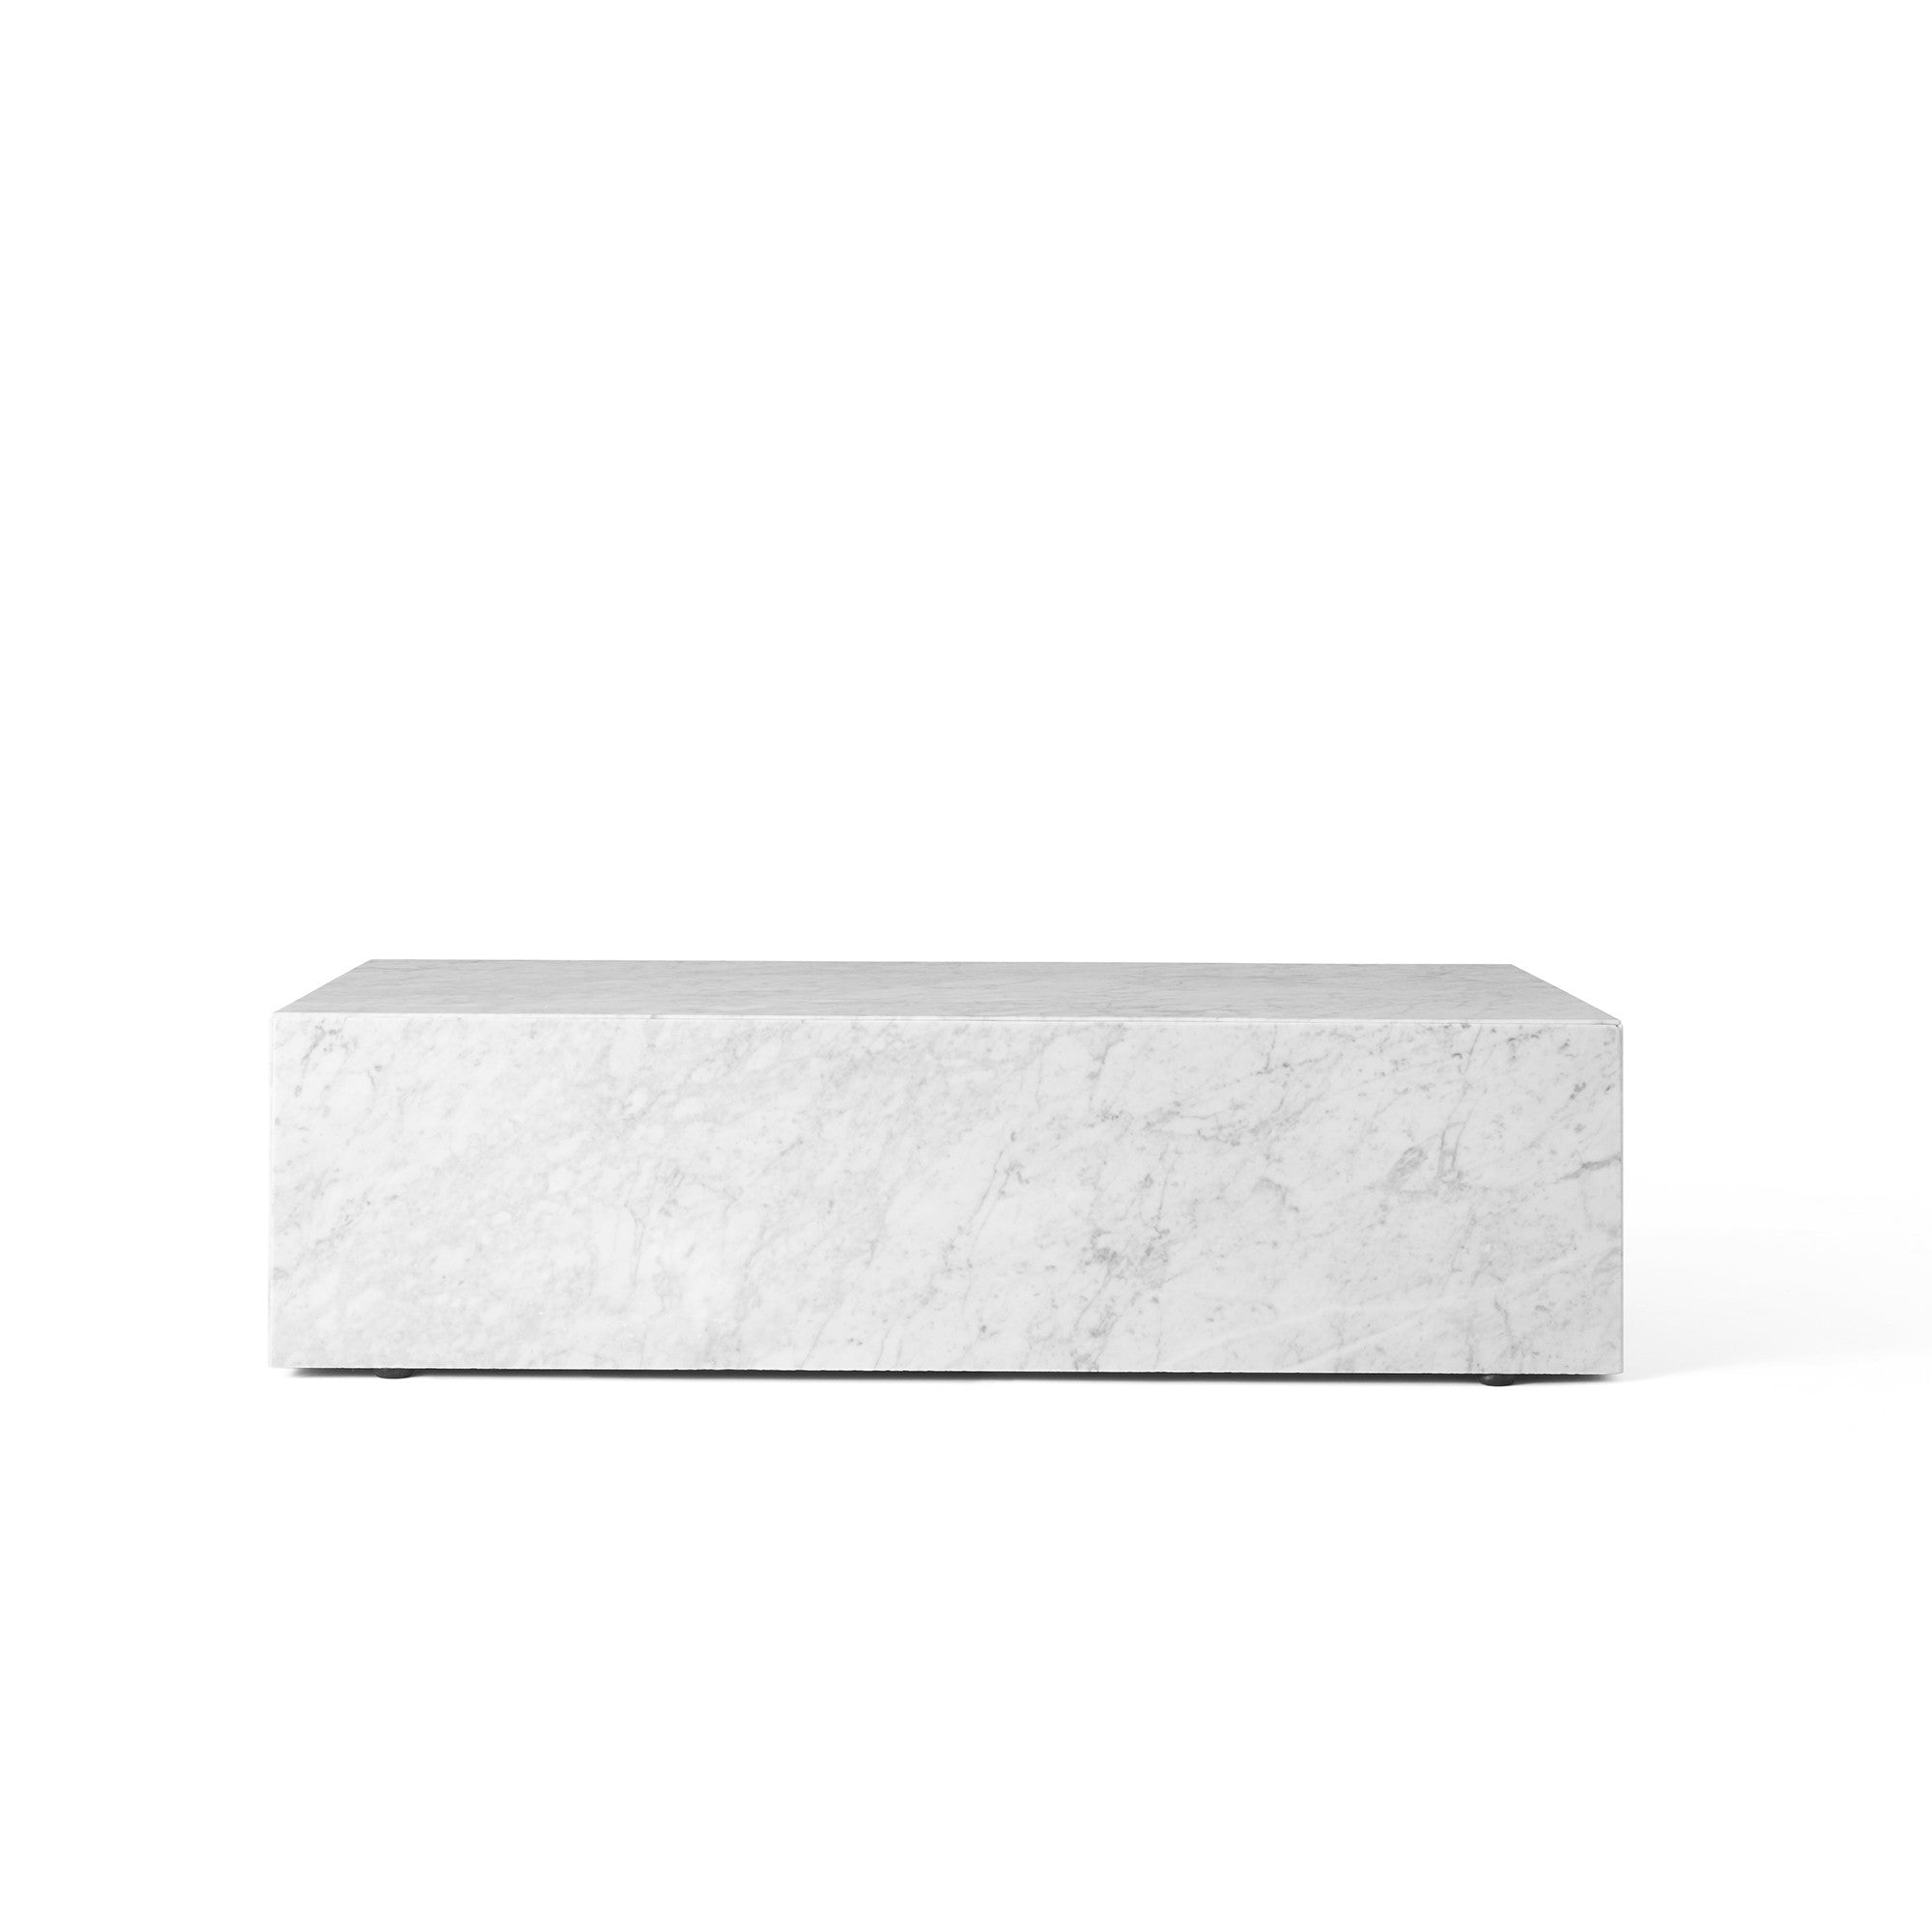 Plinth măsuță rectangulară joasă